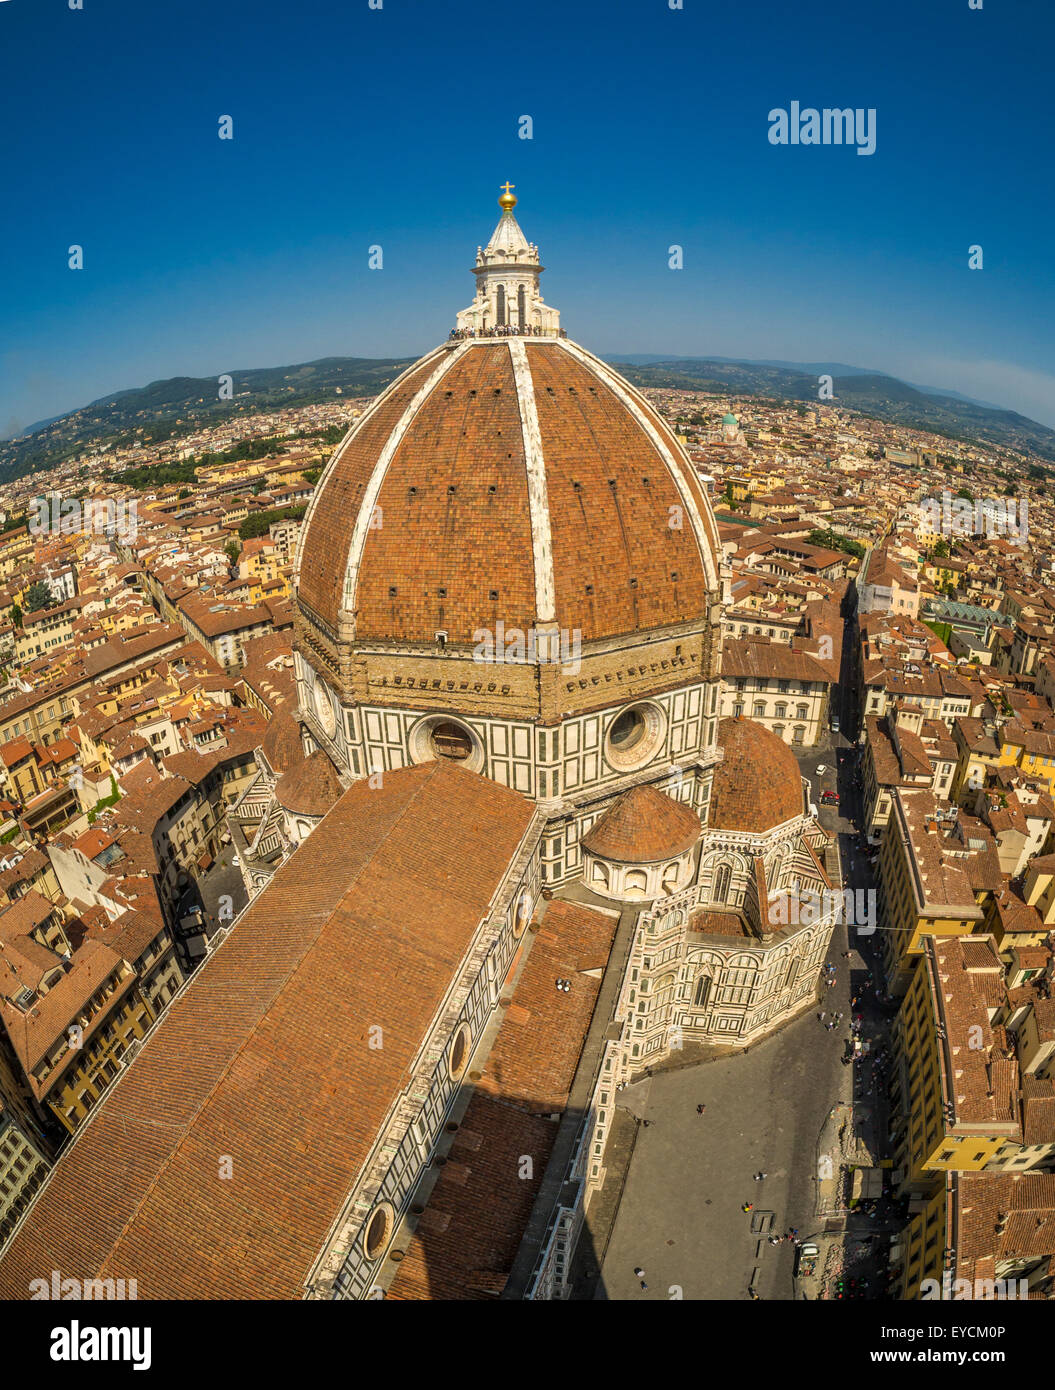 Die Kathedrale von Florenz oder die Kuppel des Doms wurden von Filippo Brunelleschi entworfen. Florenz, Italien. Stockfoto